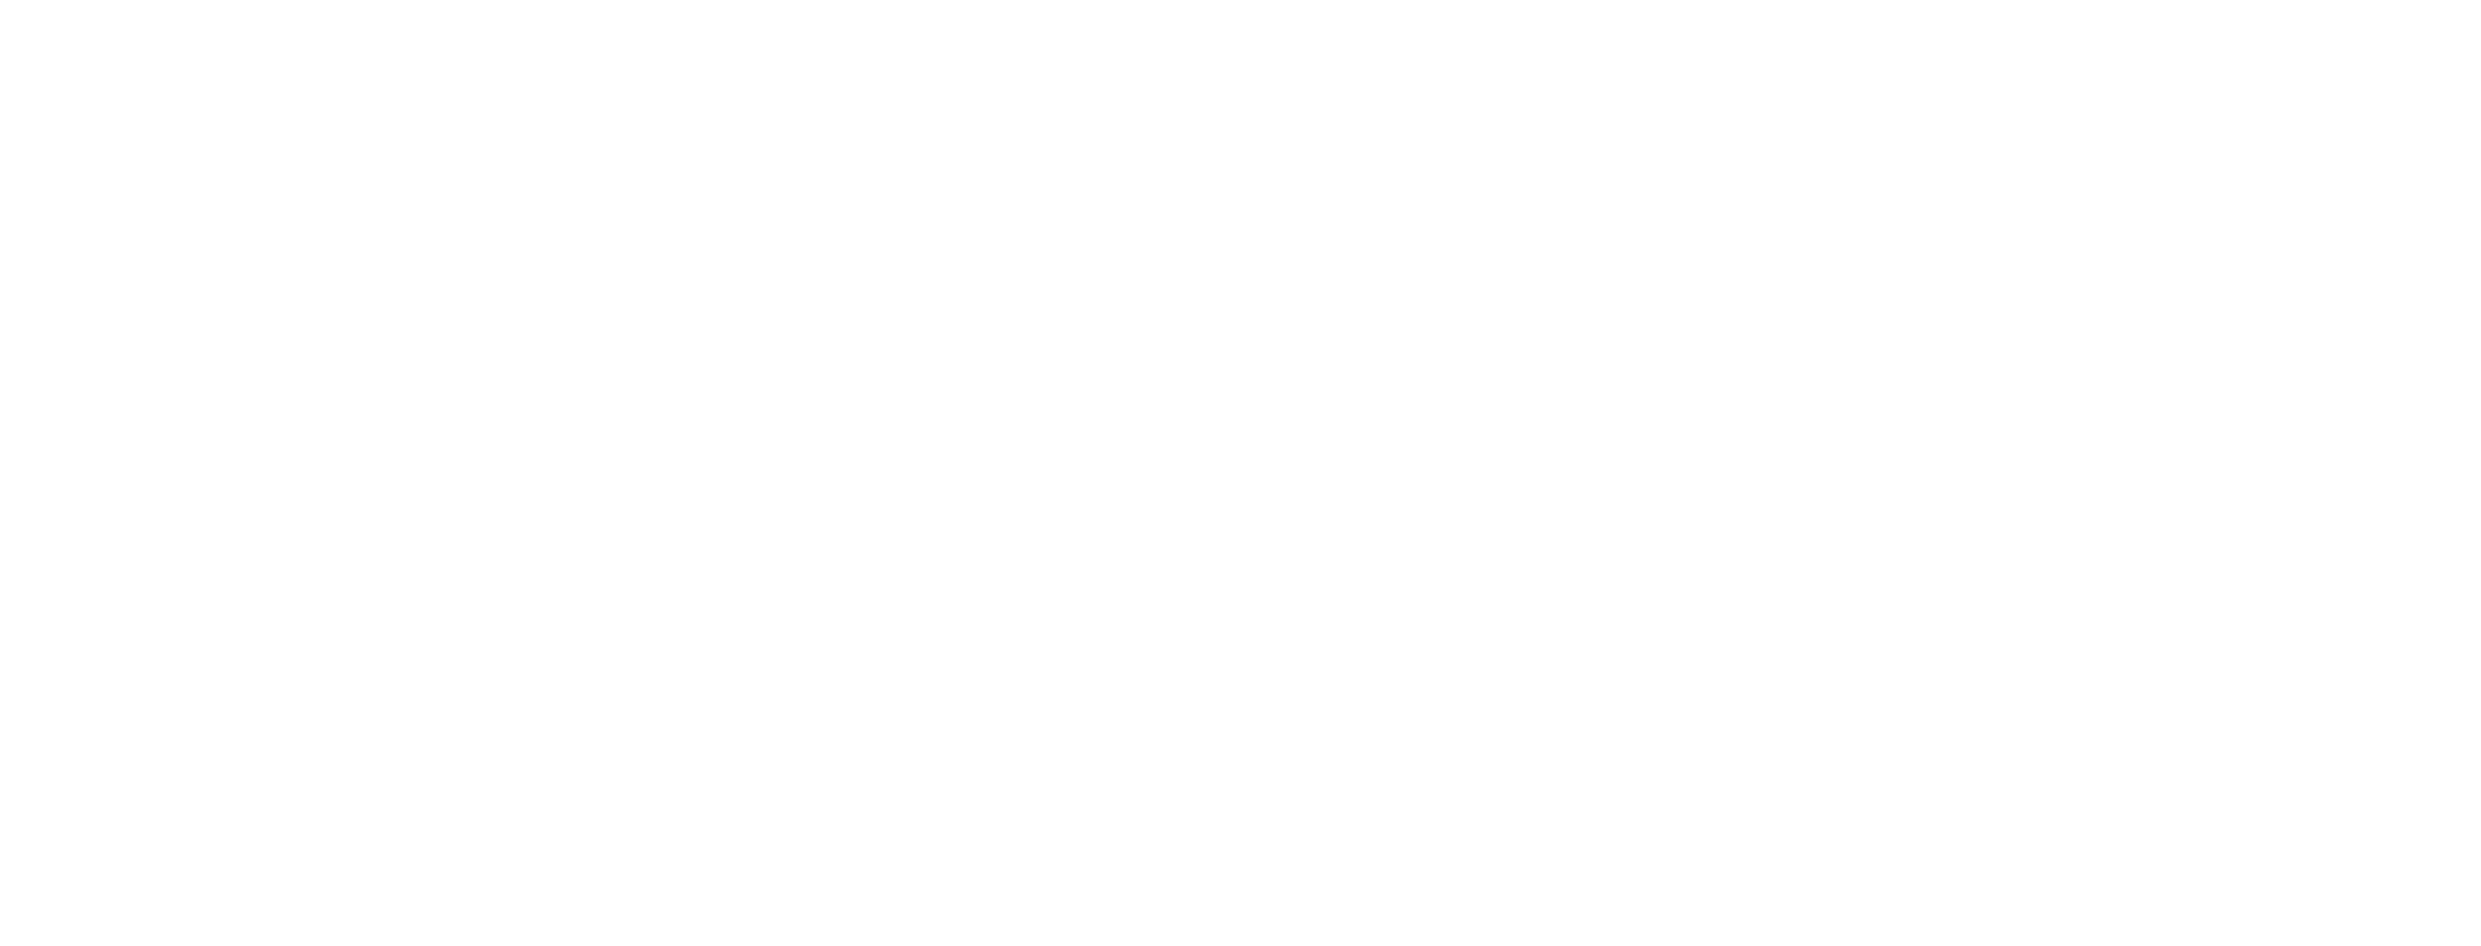 digitalswitzerland_unterlogo_leap_weiss-2